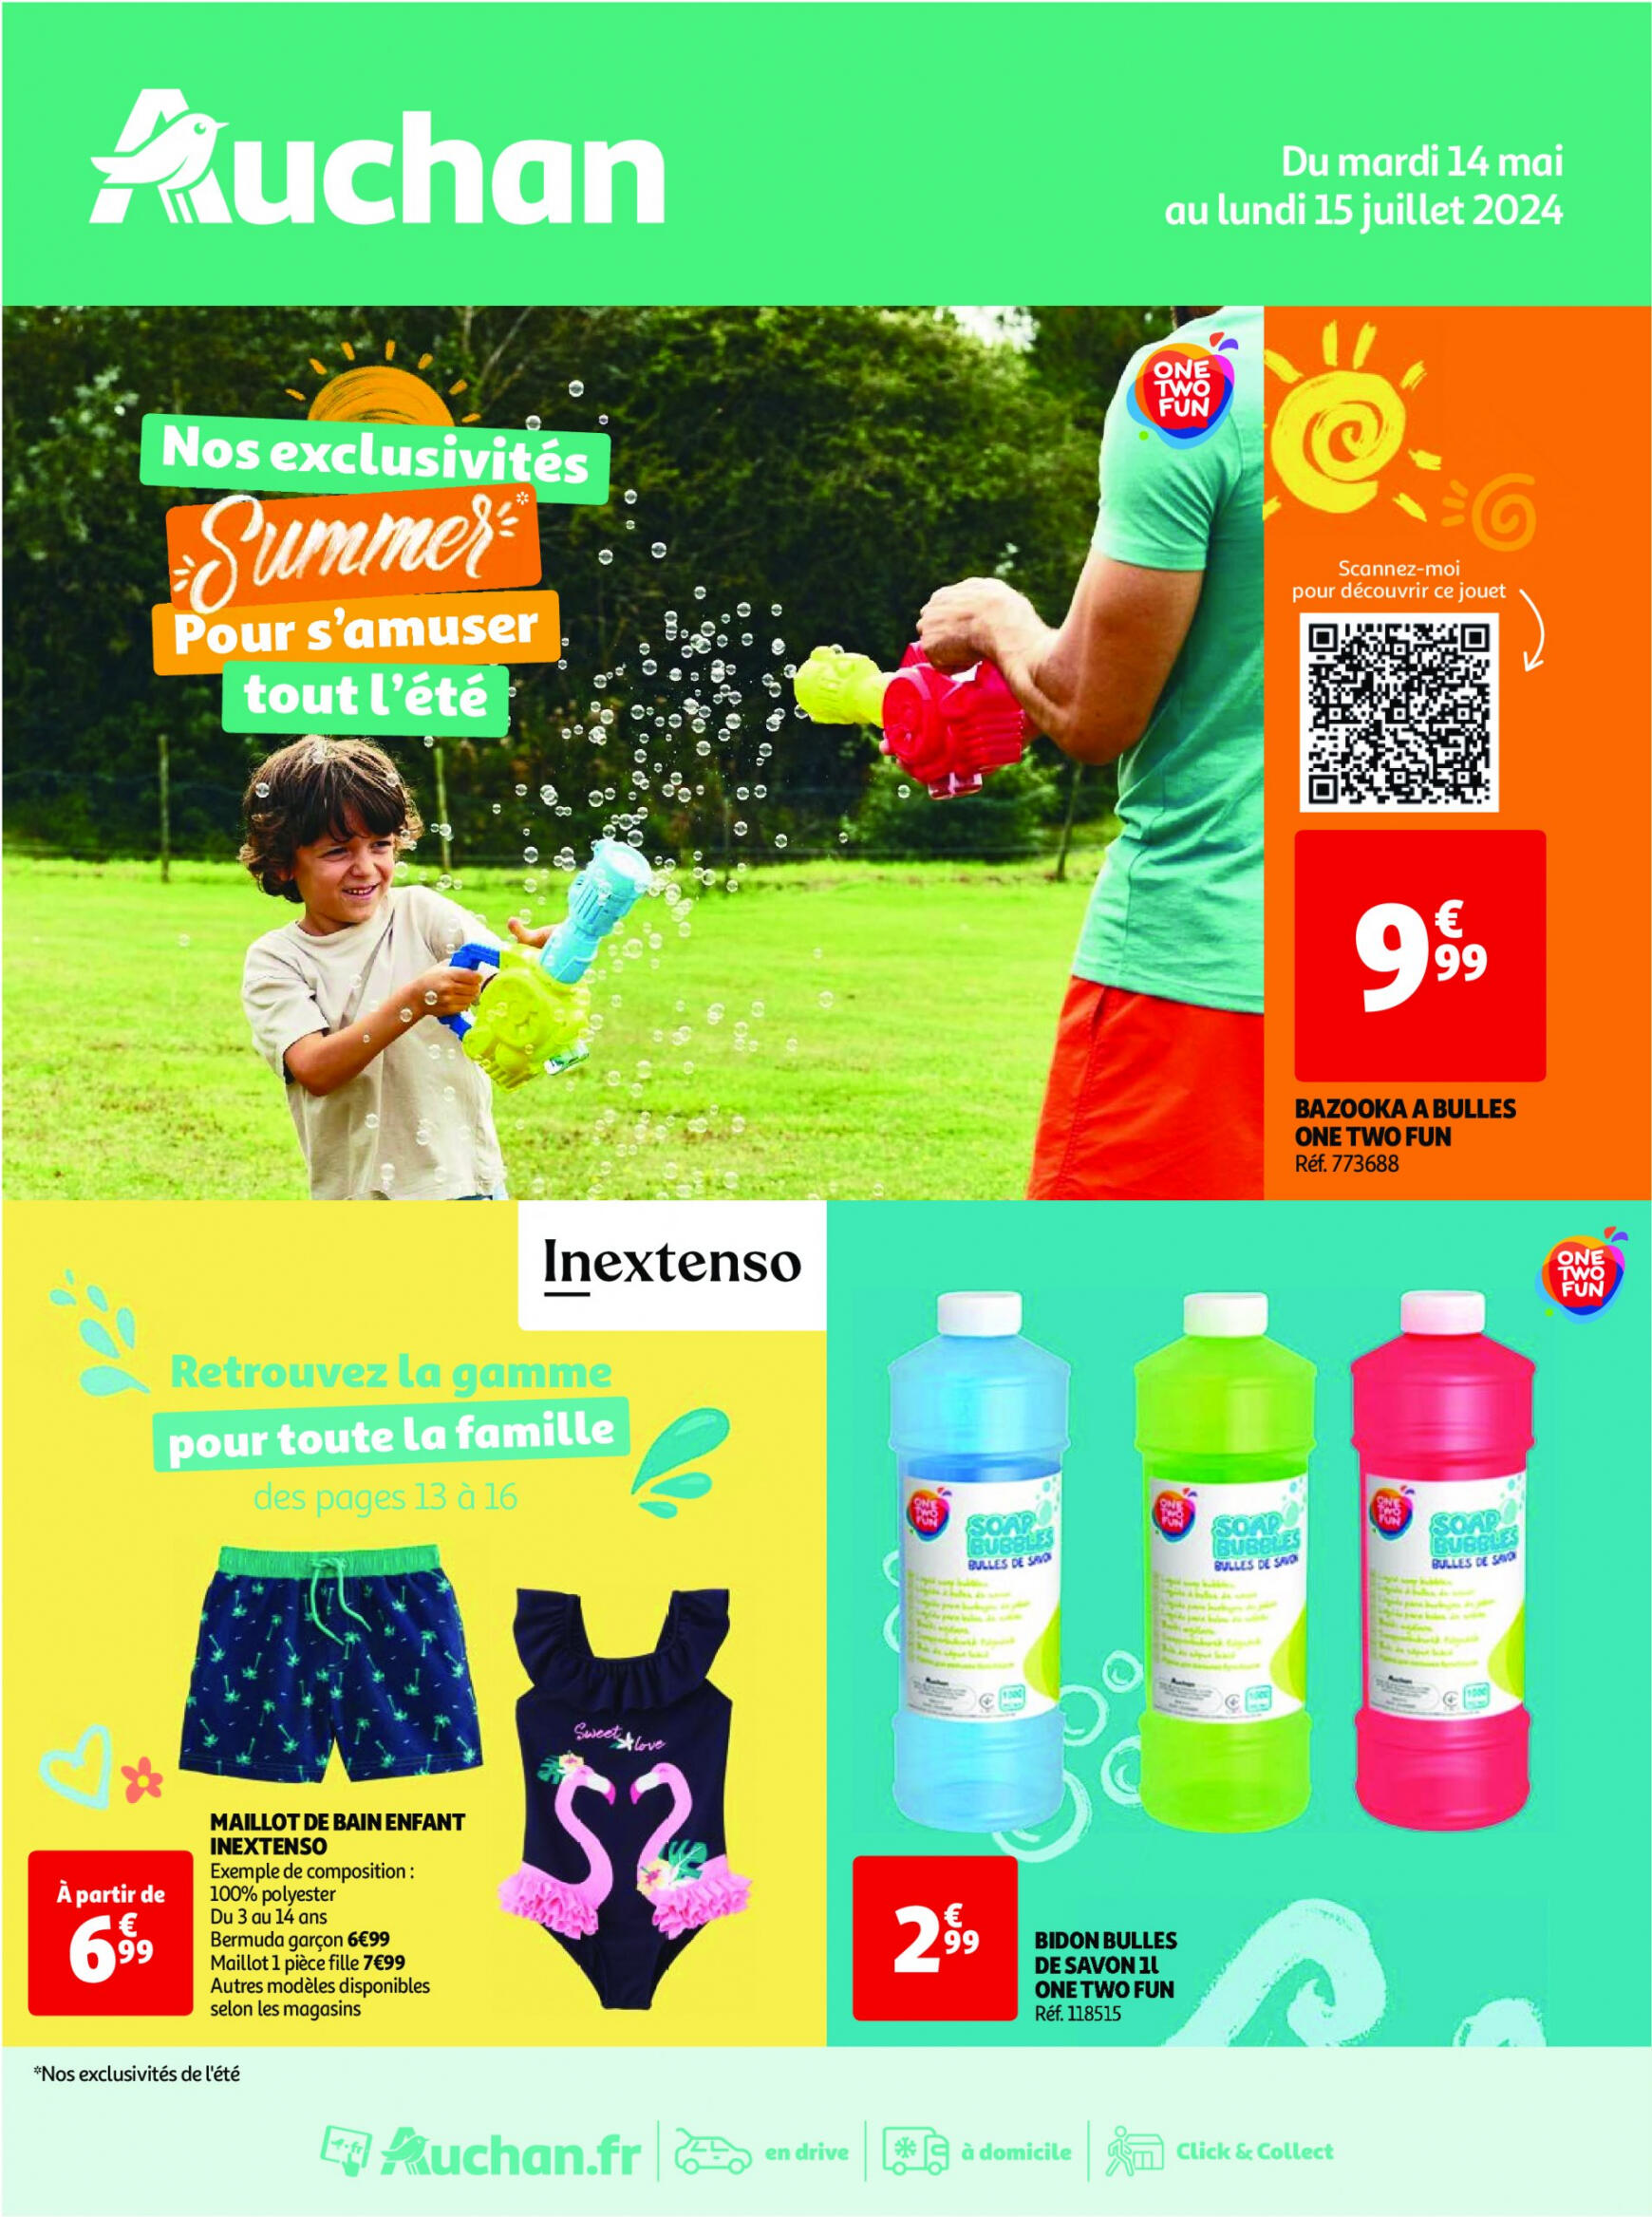 auchan - Auchan - Nos exclusivités Summer pour s'amuser tout l'été folder huidig 14.05. - 15.06. - page: 1